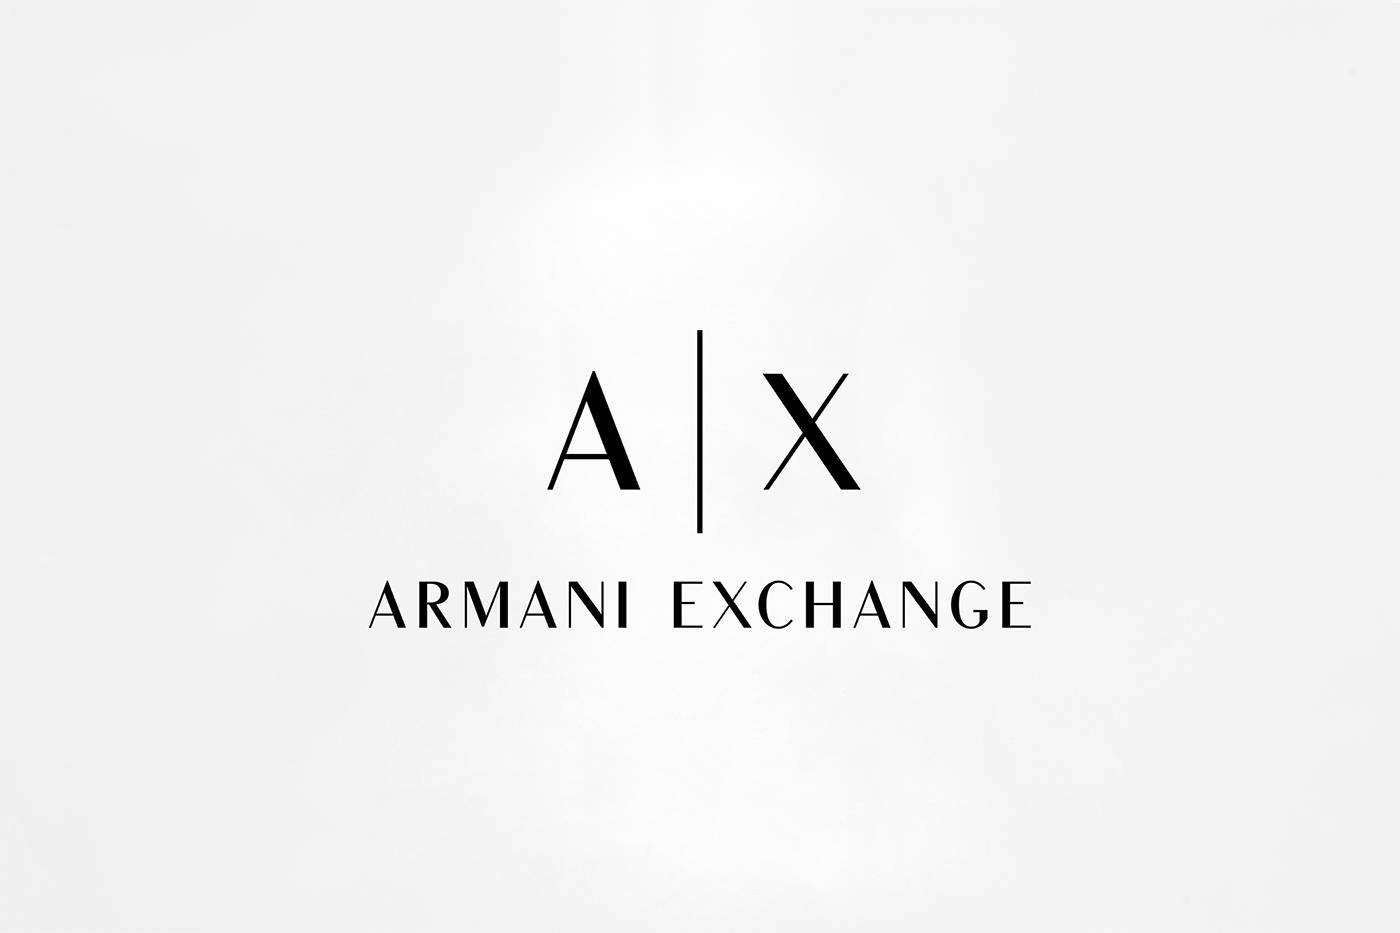 世界知名奢侈品牌阿玛尼旗下副牌Armani Exch